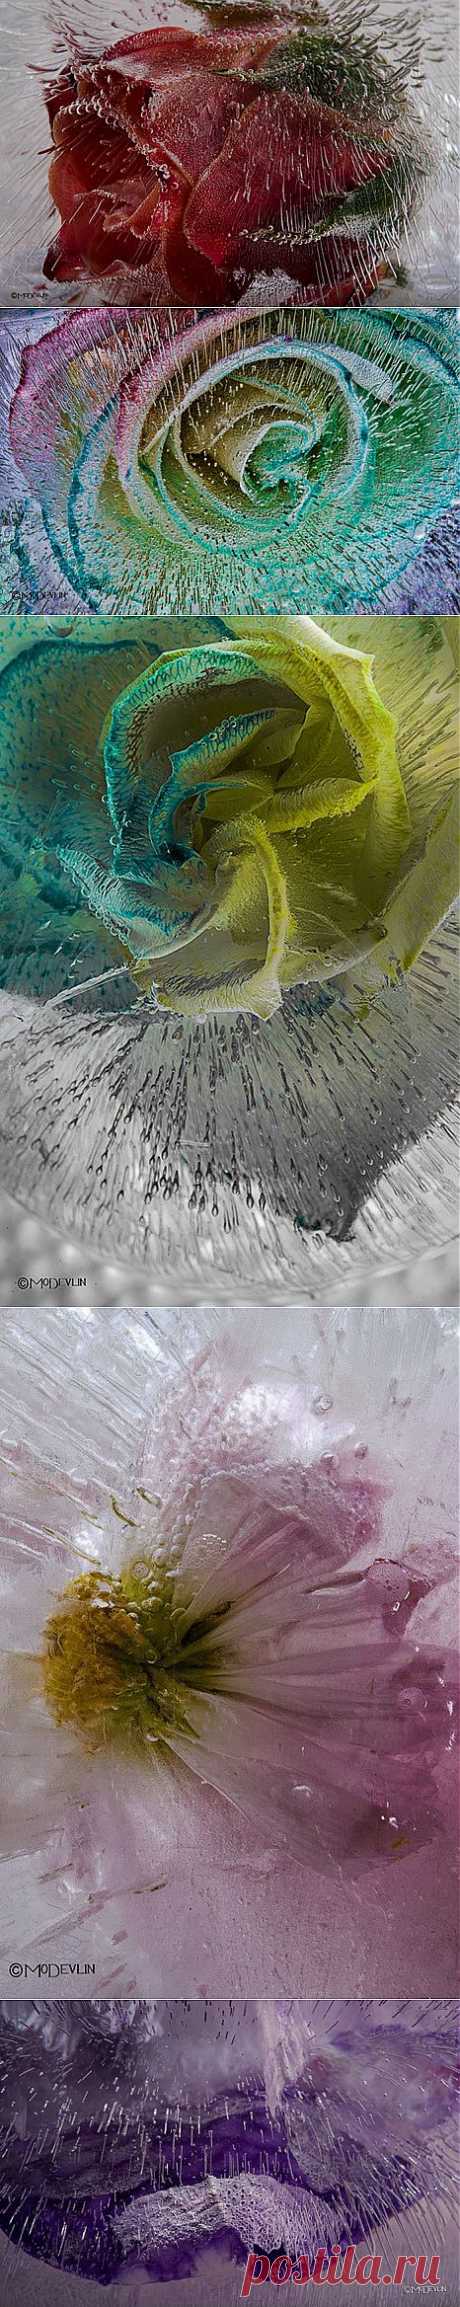 Цветы в кубиках льда: невероятные детализированные фотографии | Фотография | Фотография